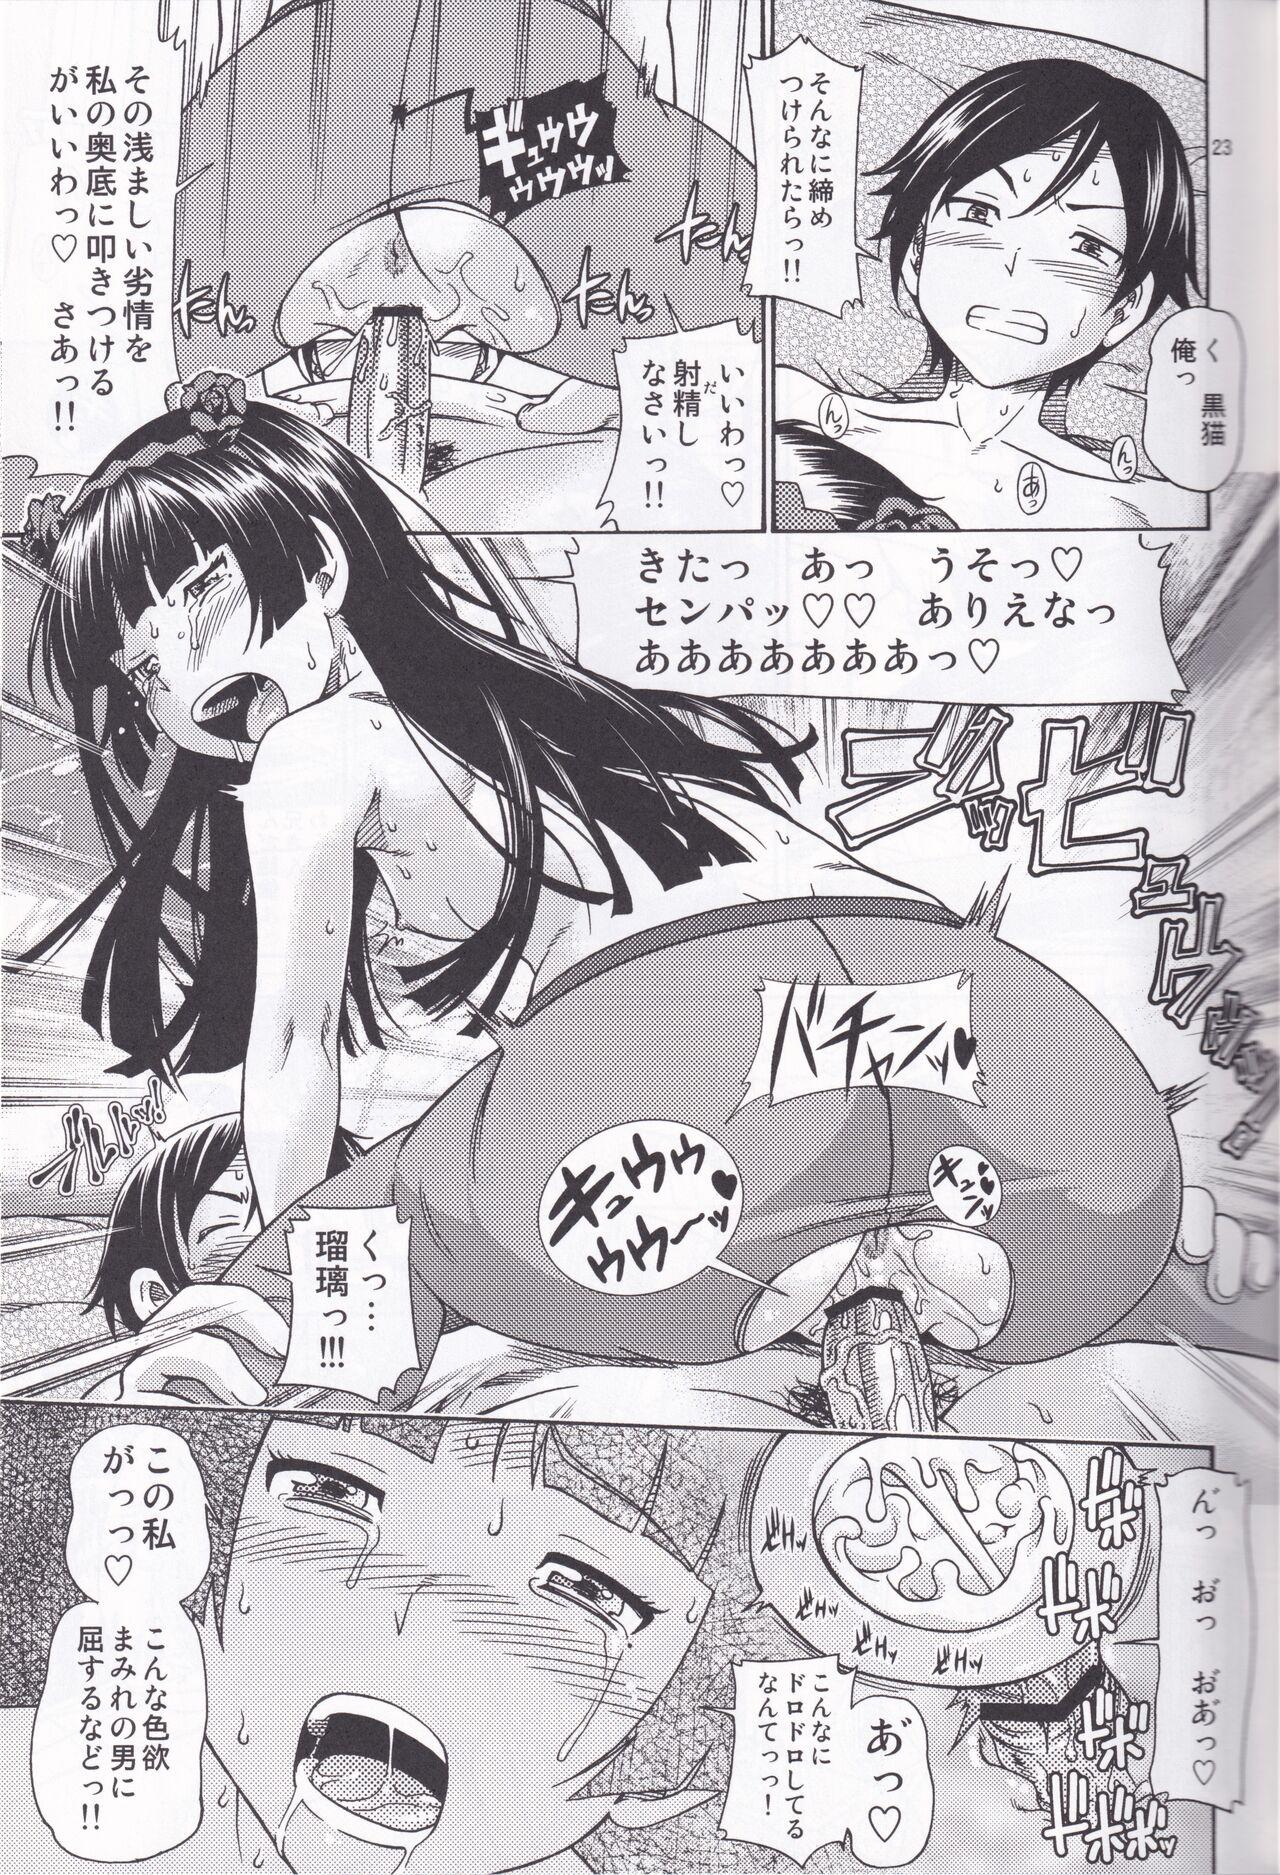 Kensou Ogawa Omake Manga Collection 21